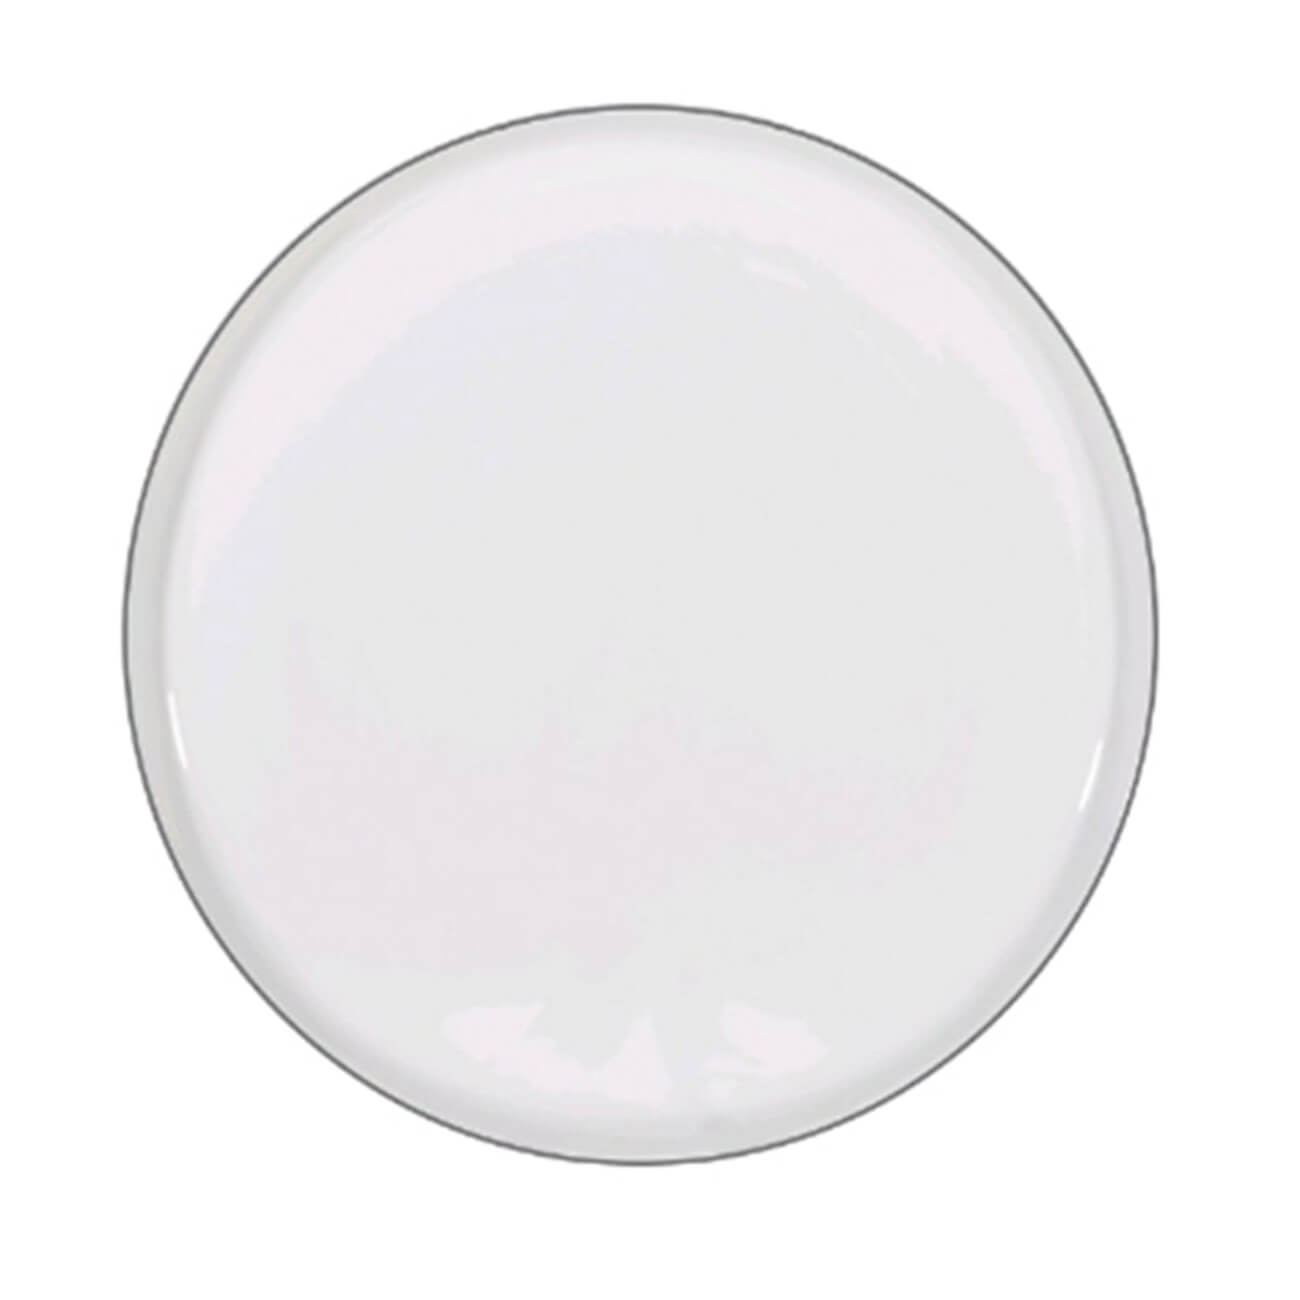 Тарелка десертная, 20 см, 2 шт, фарфор F, белая, Ideal silver тарелка десертная luminarc stonemania white 20 см